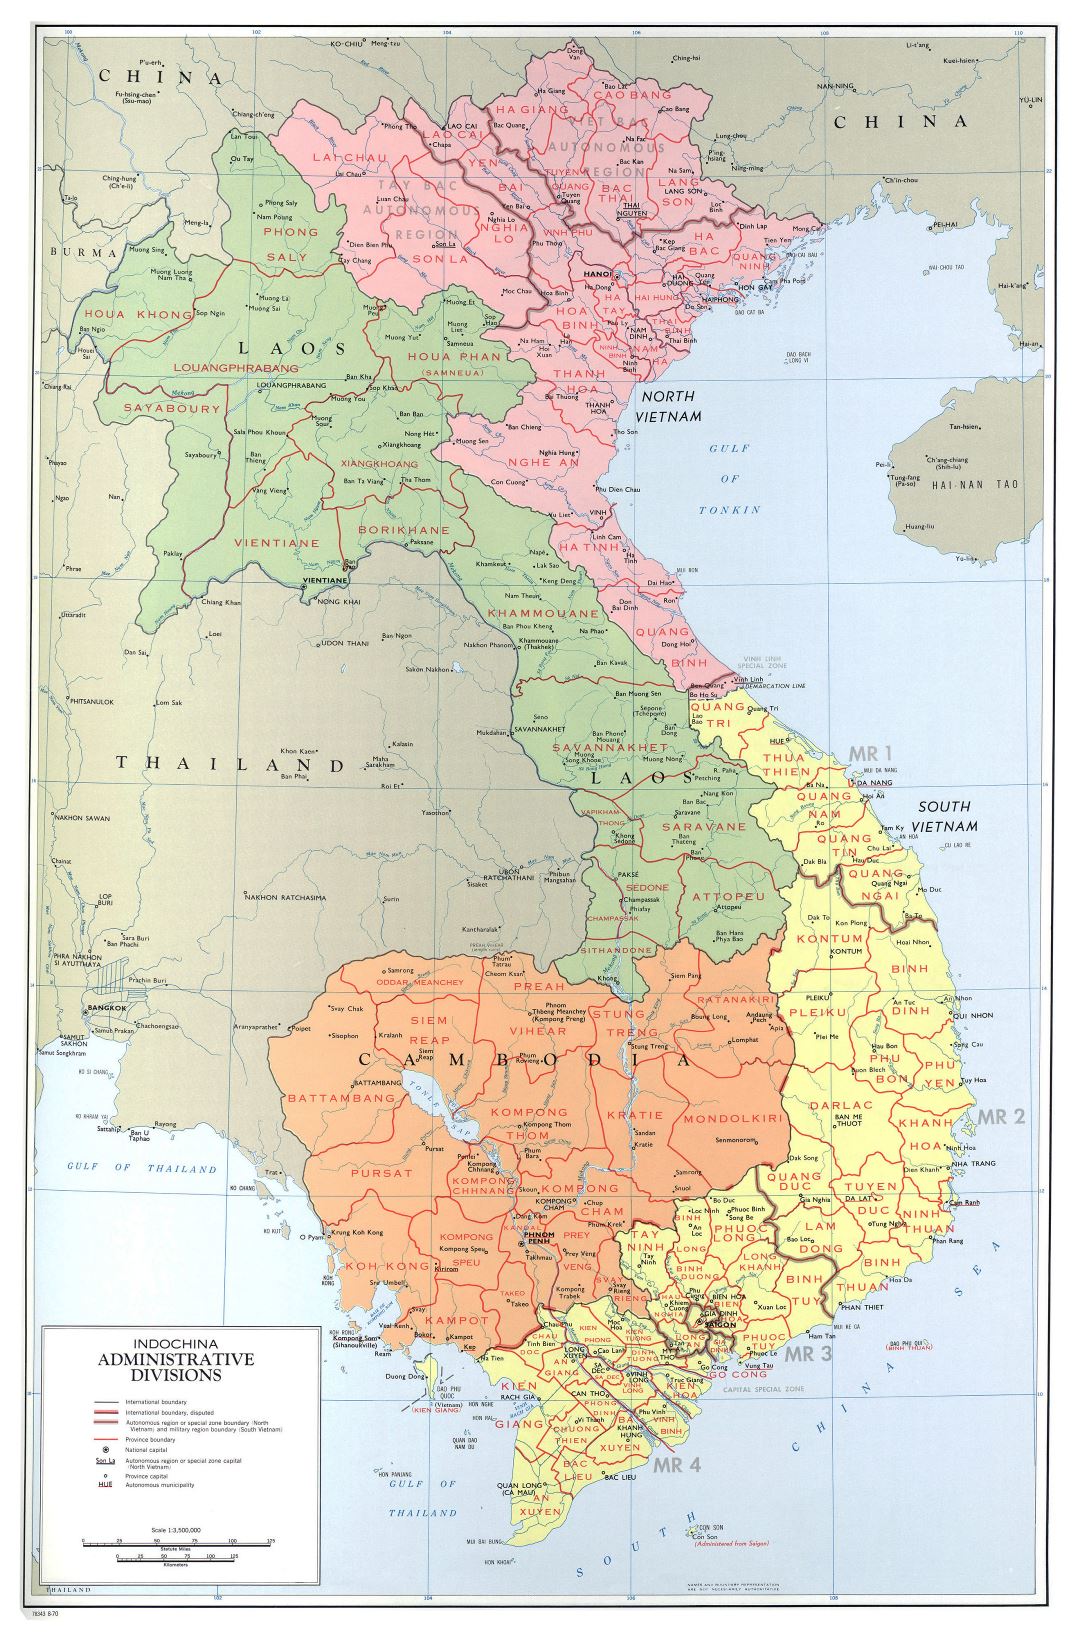 Gran escala divisiones administrativas mapa de Indochina - 1970